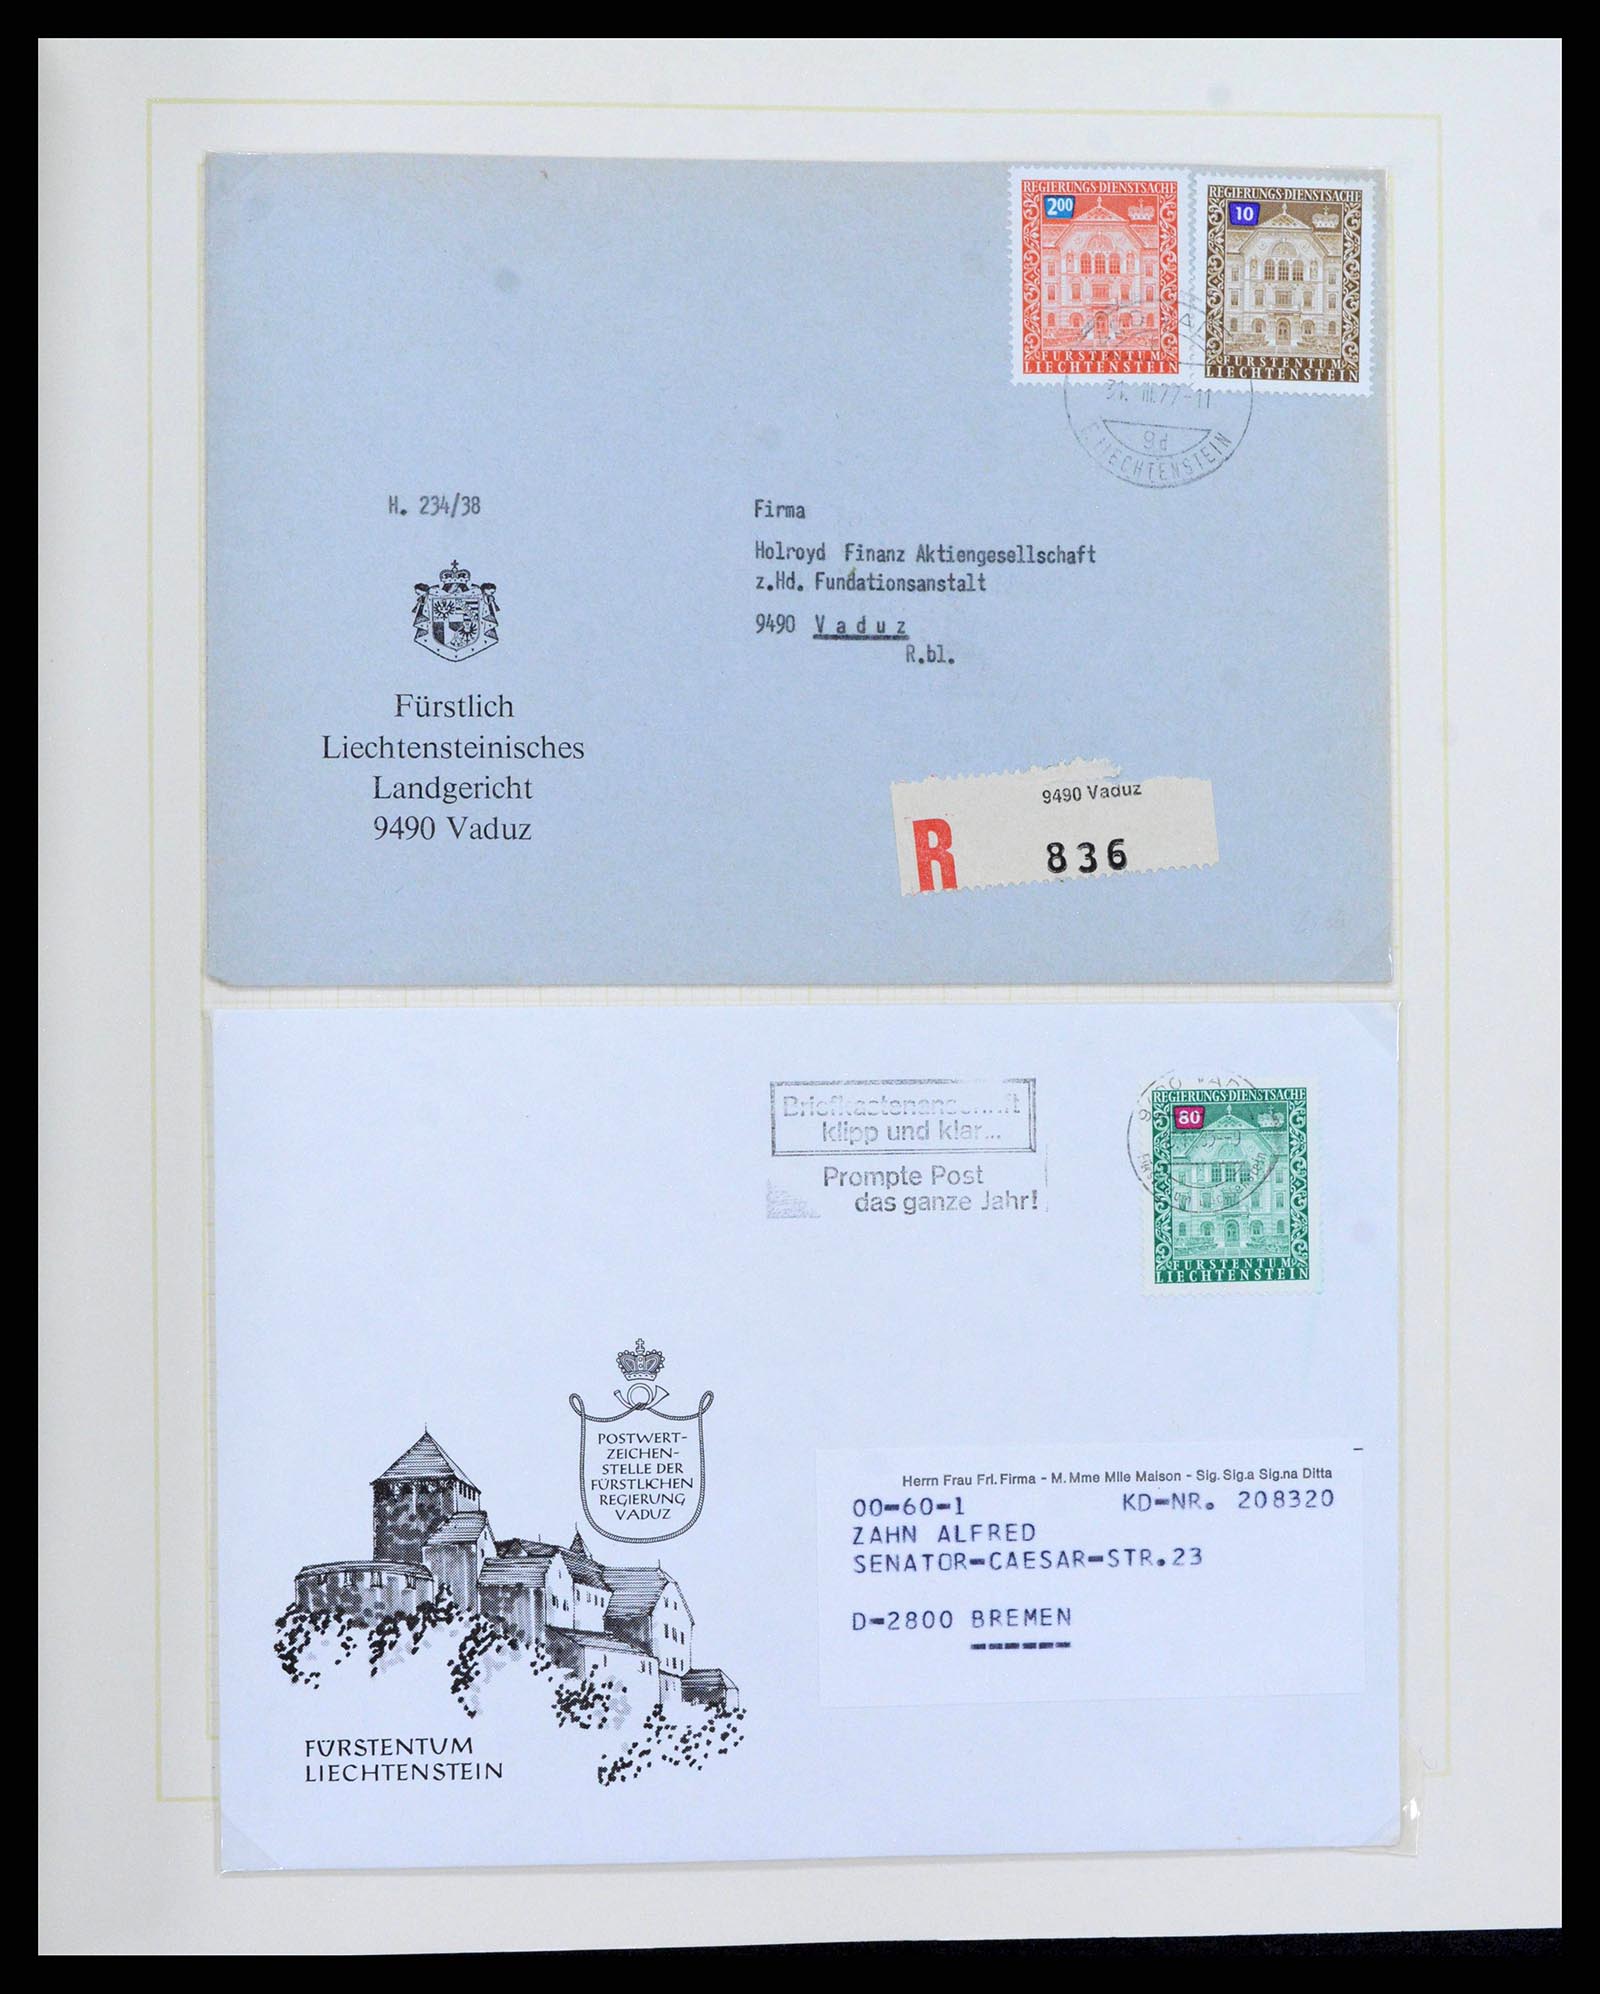 38204 0048 - Stamp collection 38204 Liechtenstein service covers 1932-1989.